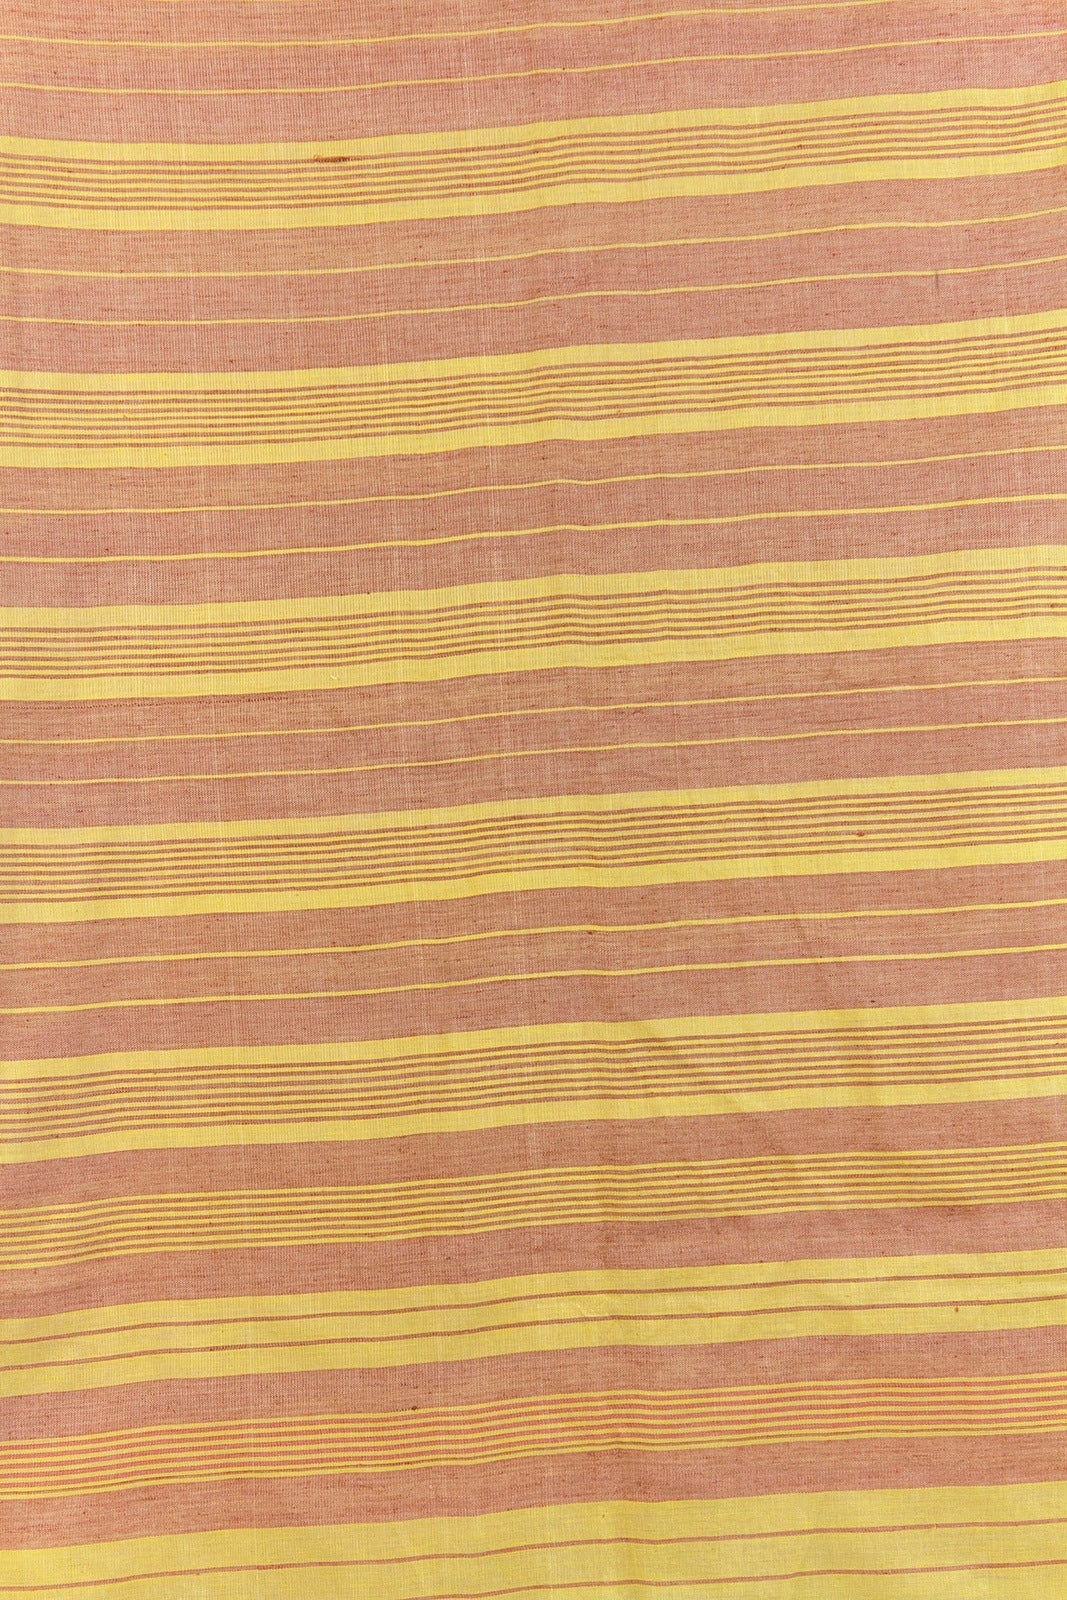 Cotton Gamusa Towel Mustard Stripes (Made to order)